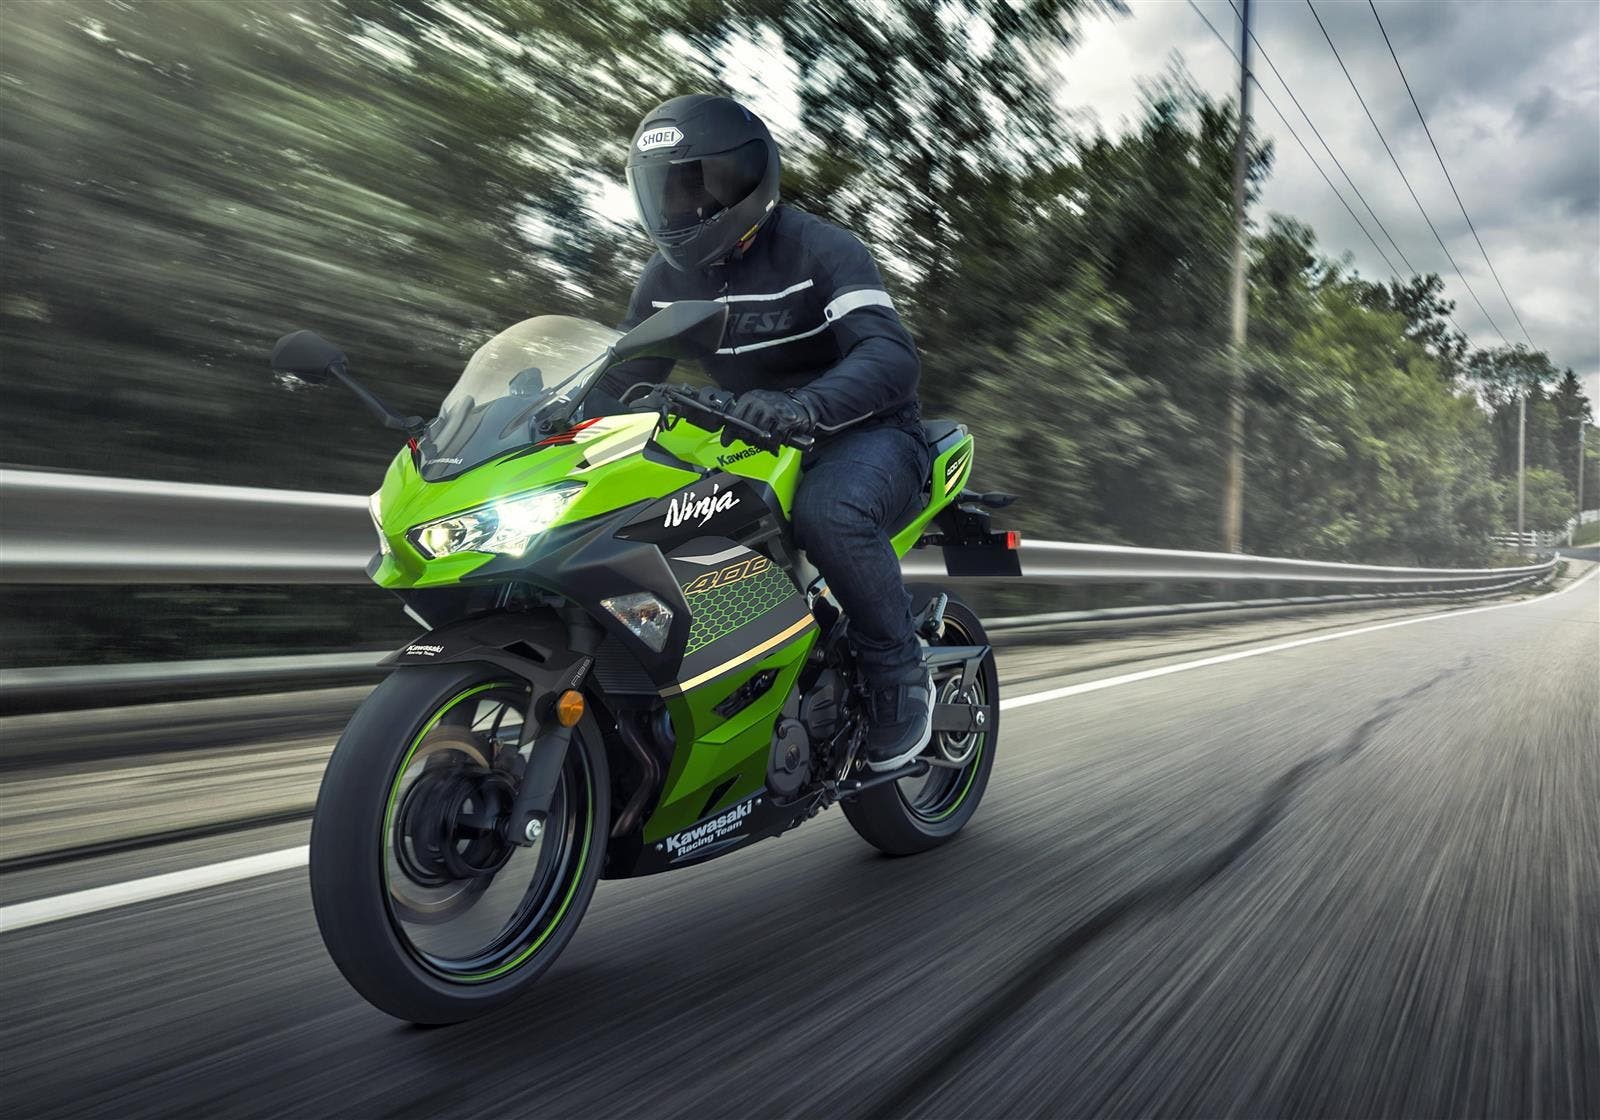 Giá Xe Kawasaki Ninja 400 Abs 2020 Mới Nhất Hiện Tại Ở Việt Nam